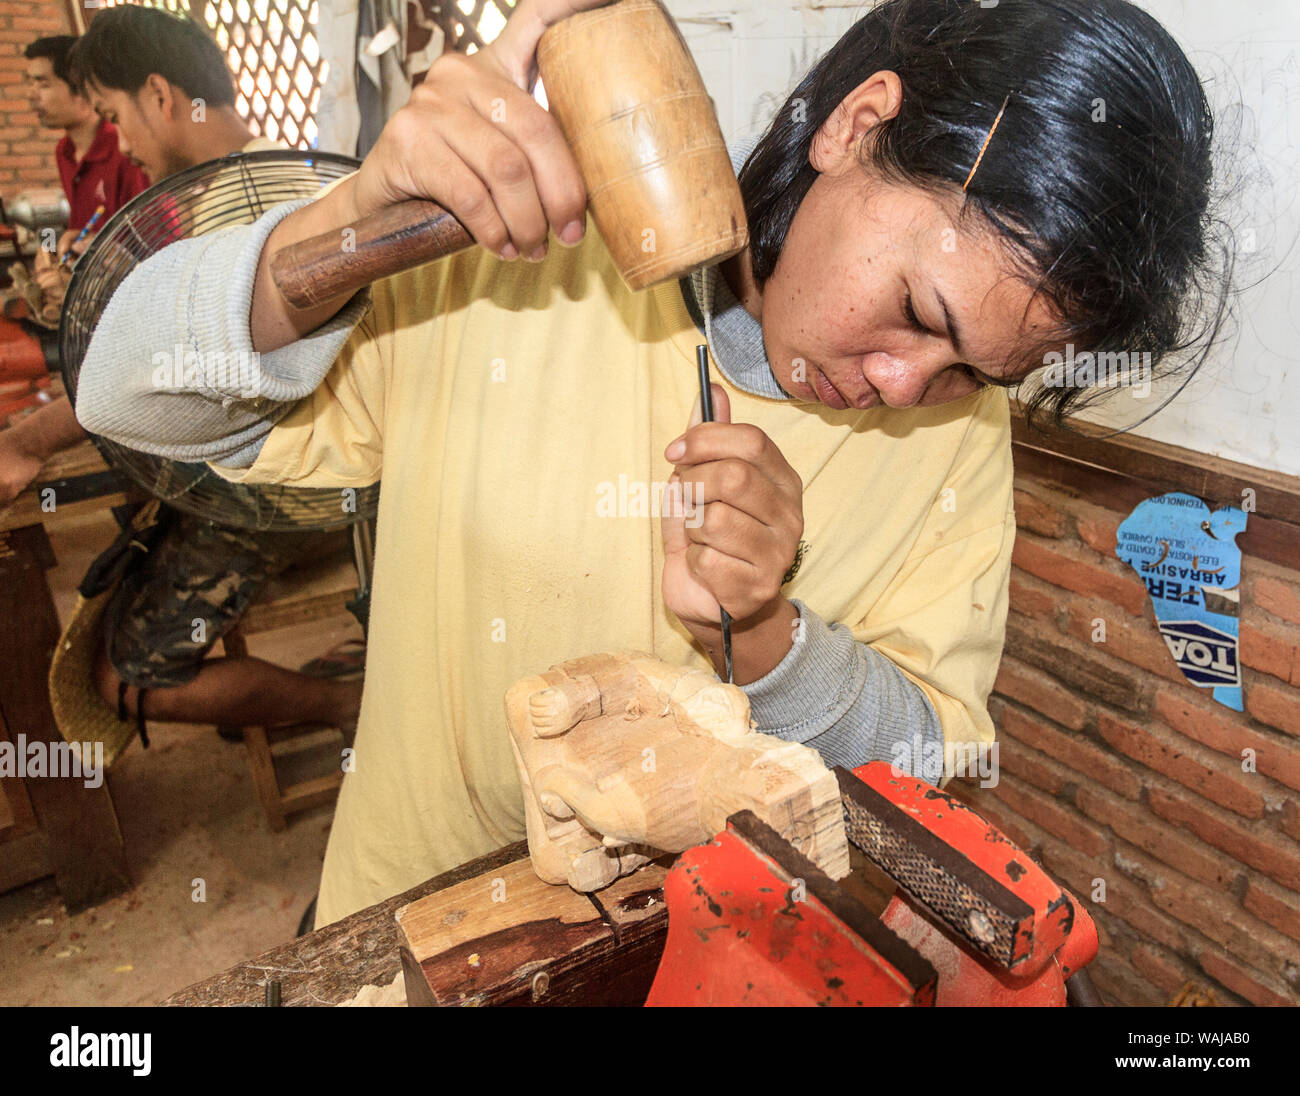 En Siem Reap, Camboya. Mujer joven tallando una figura de madera a los artesanos de Angkor, un taller en el que se capacita a jóvenes incultos y discapacitados jóvenes camboyanos en la artesanía. (Uso Editorial solamente) Foto de stock